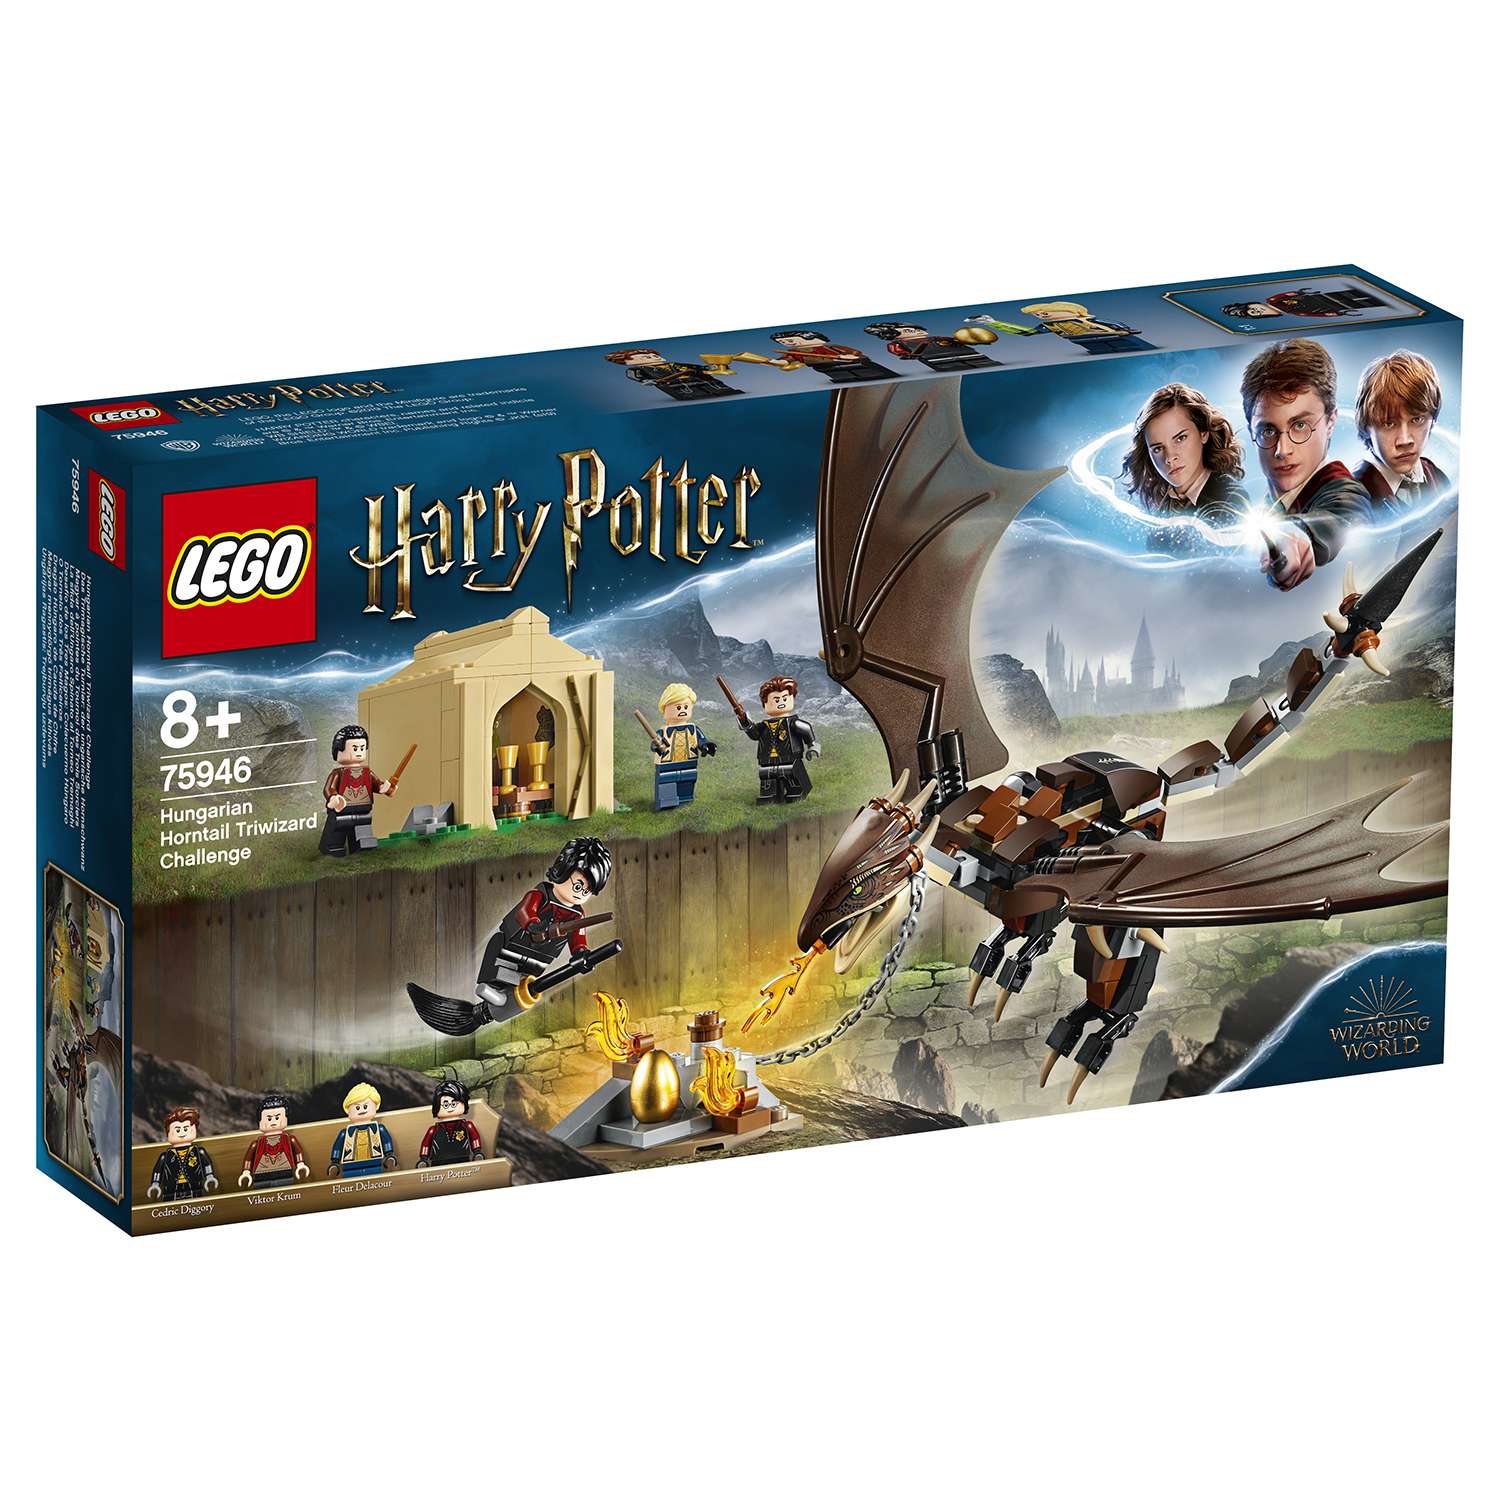 Конструктор LEGO Harry Potter Турнир трёх волшебников венгерская хвосторога 75946 - фото 2